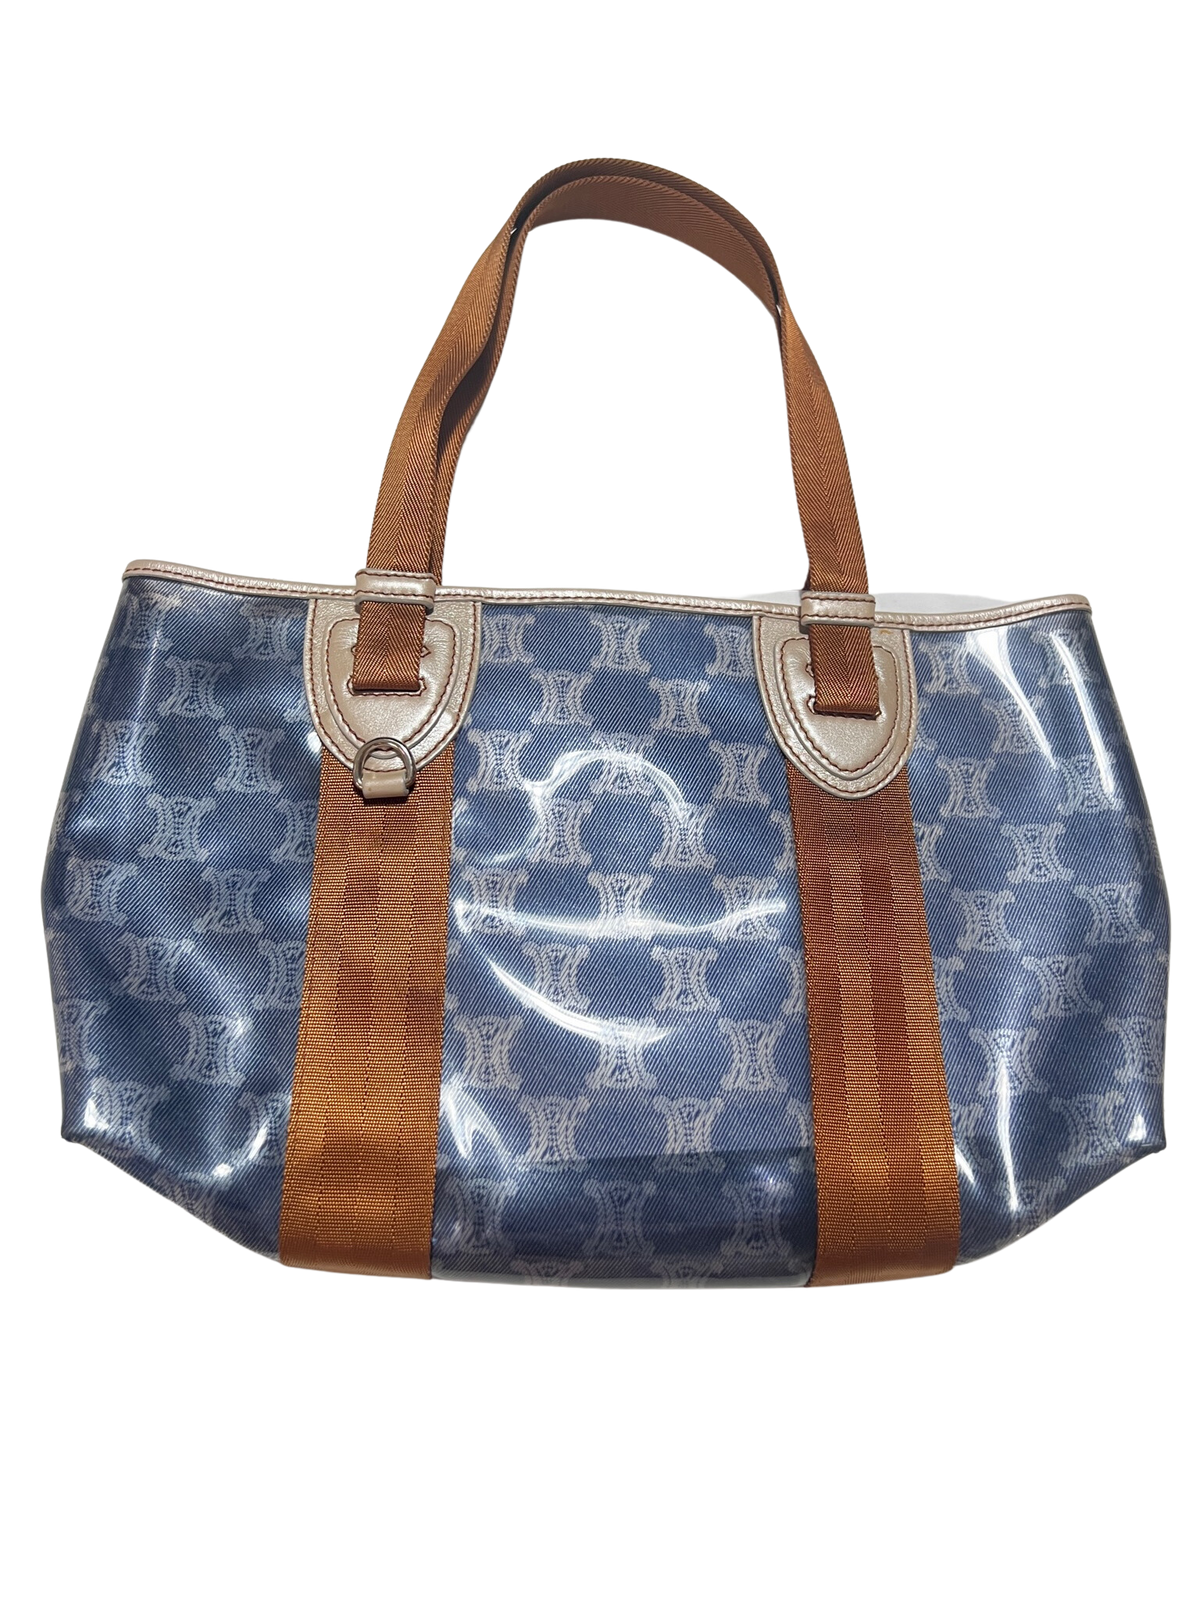 Celine- Designer Brown and Blue Handbag NEW